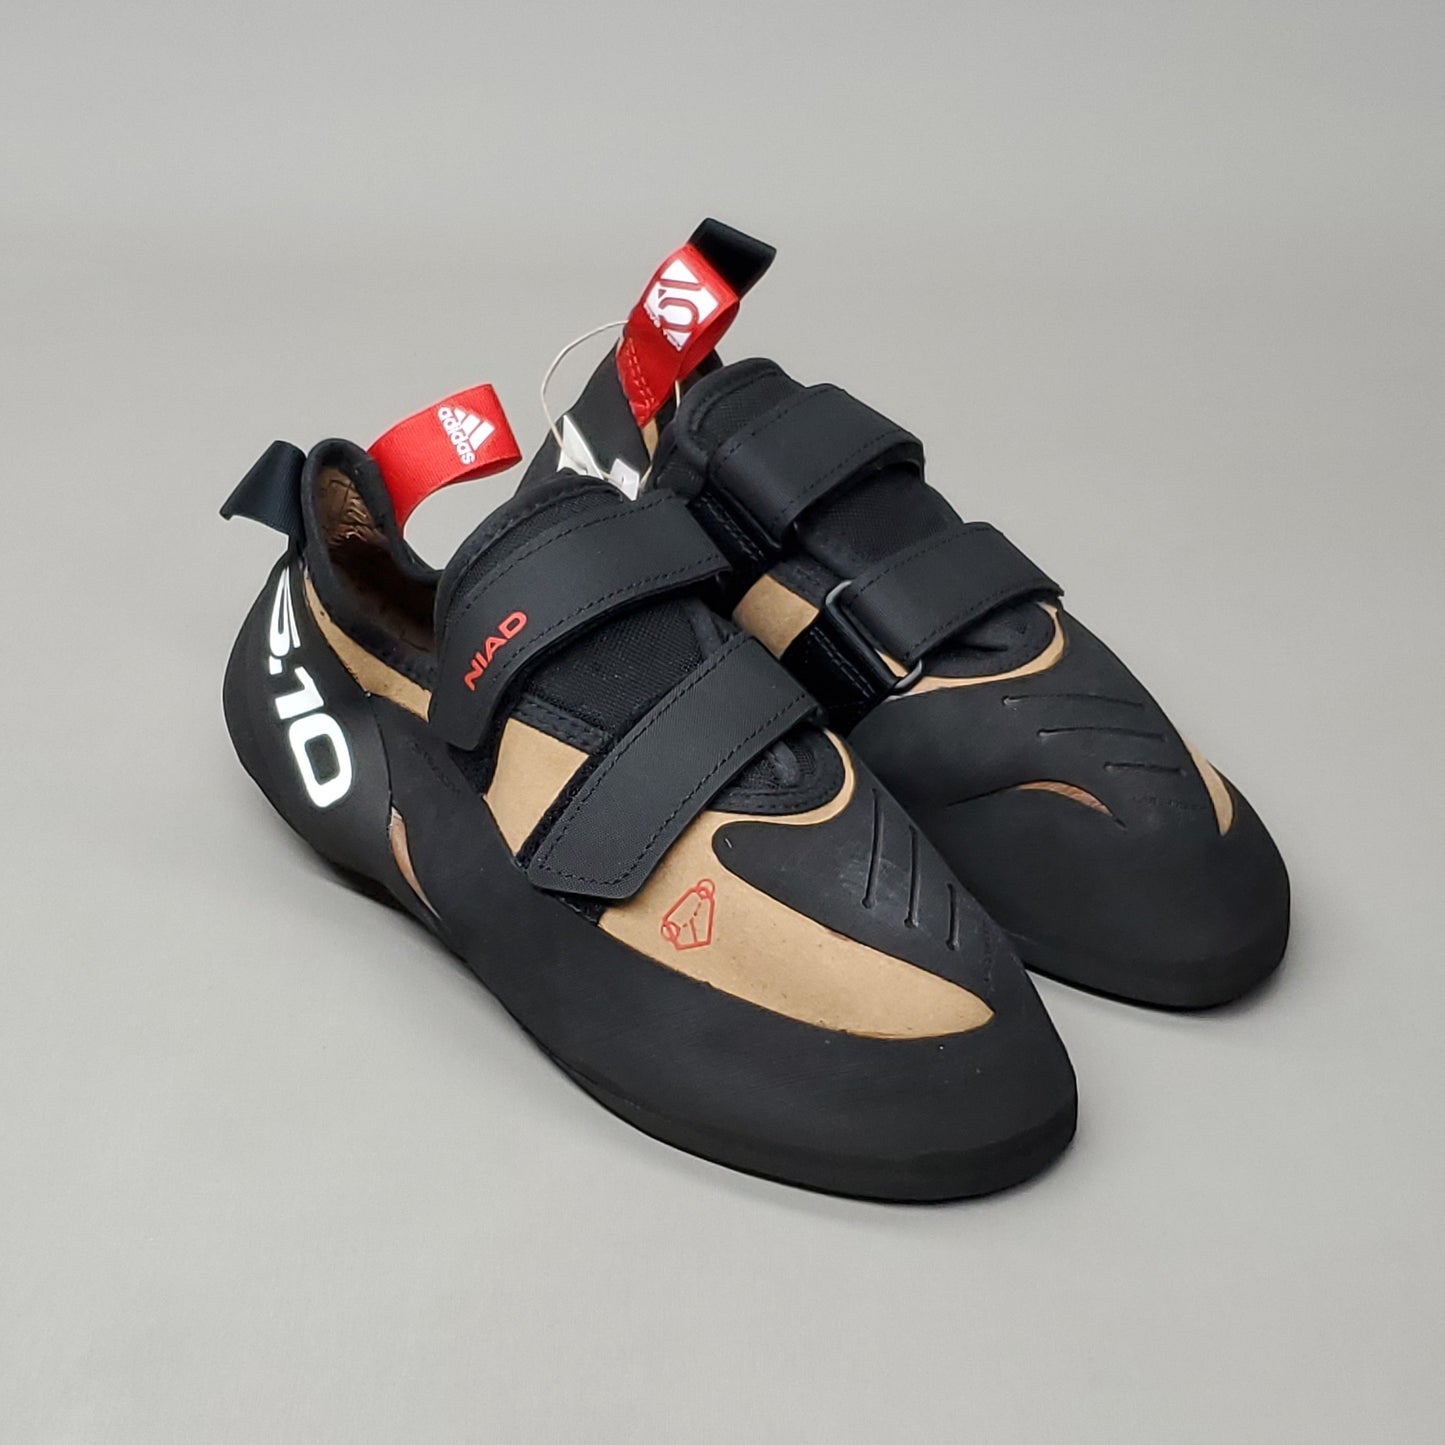 ADIDAS Five Ten Niad Hook & Loop VCS Climbing Shoes Men's Sz 6.5 Mesa FW2849 (New)